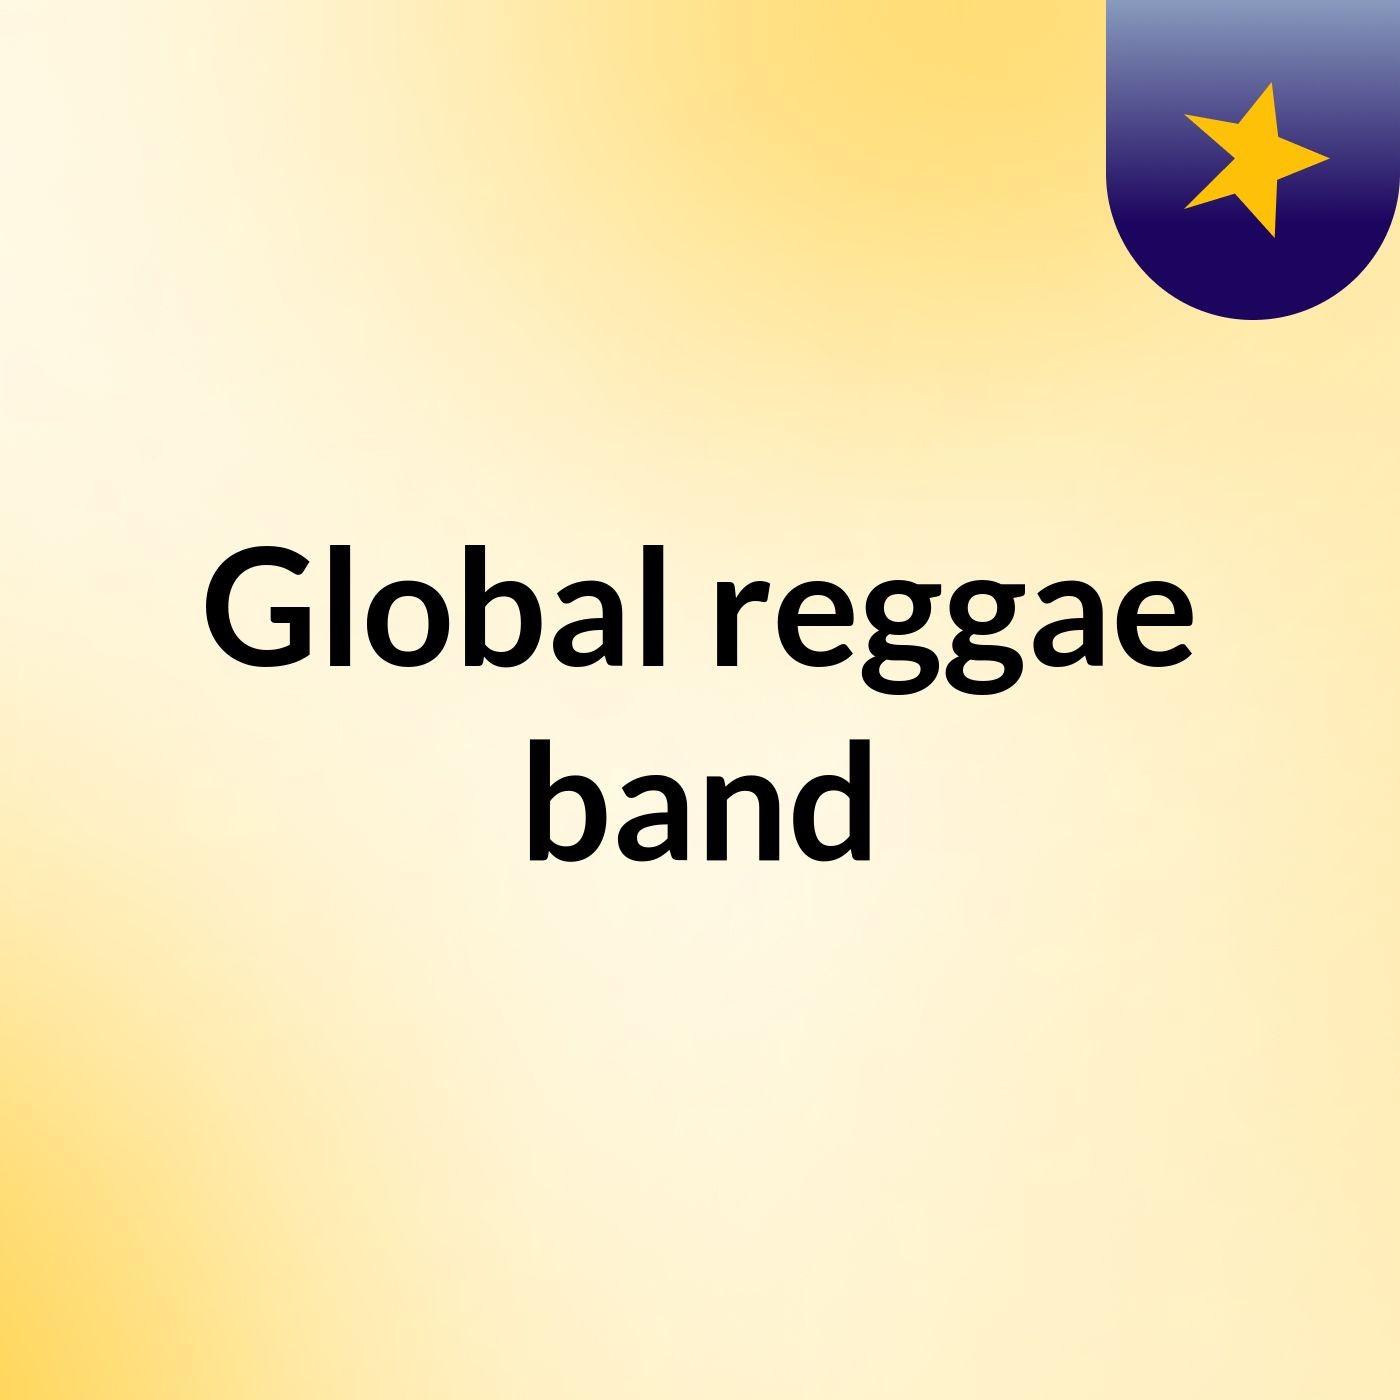 Global reggae band